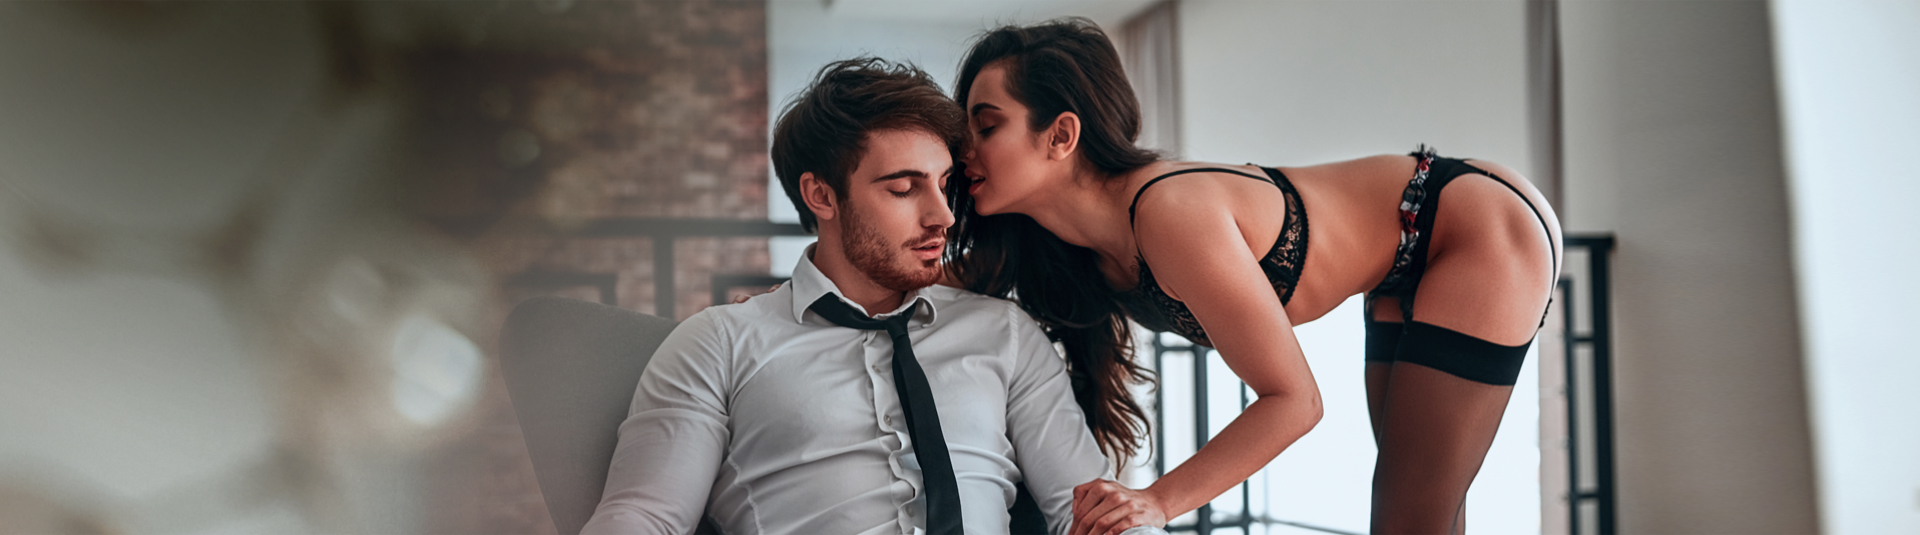 Sex dating! Sind sexuelle Abenteuer das Richtige für dich?